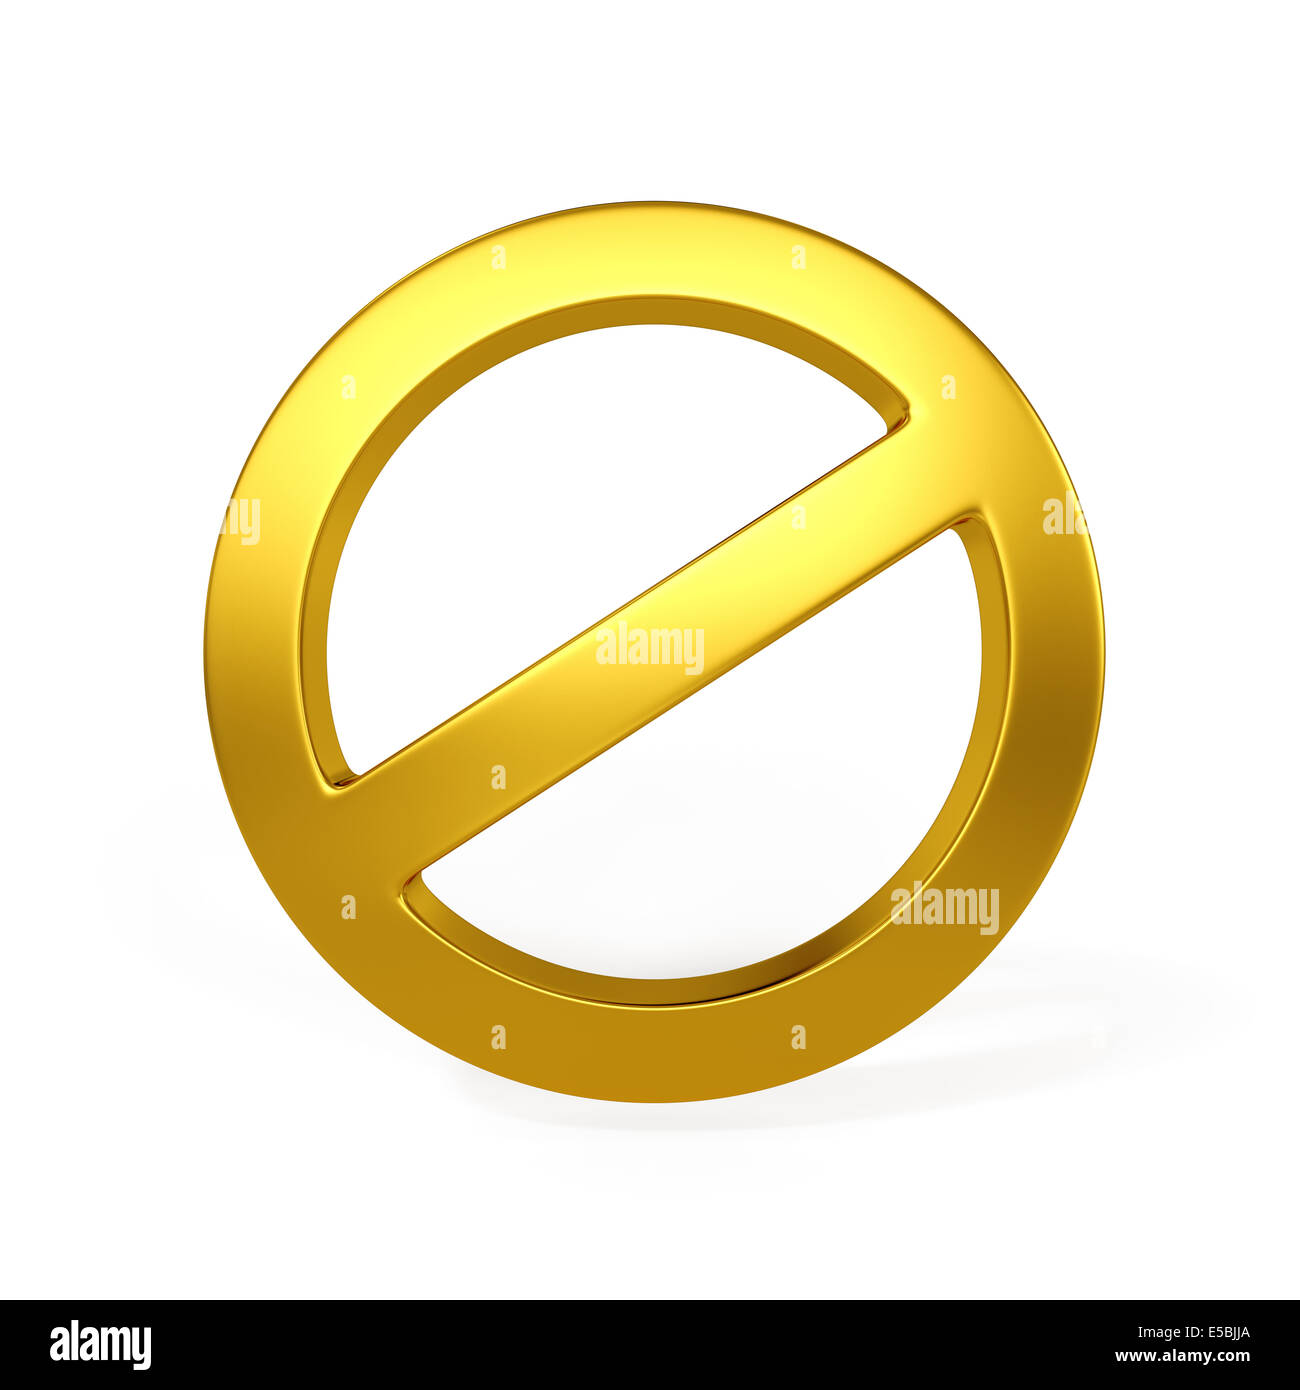 3D golden verbotene Zeichen auf dem weißen Hintergrund isoliert Stockfoto